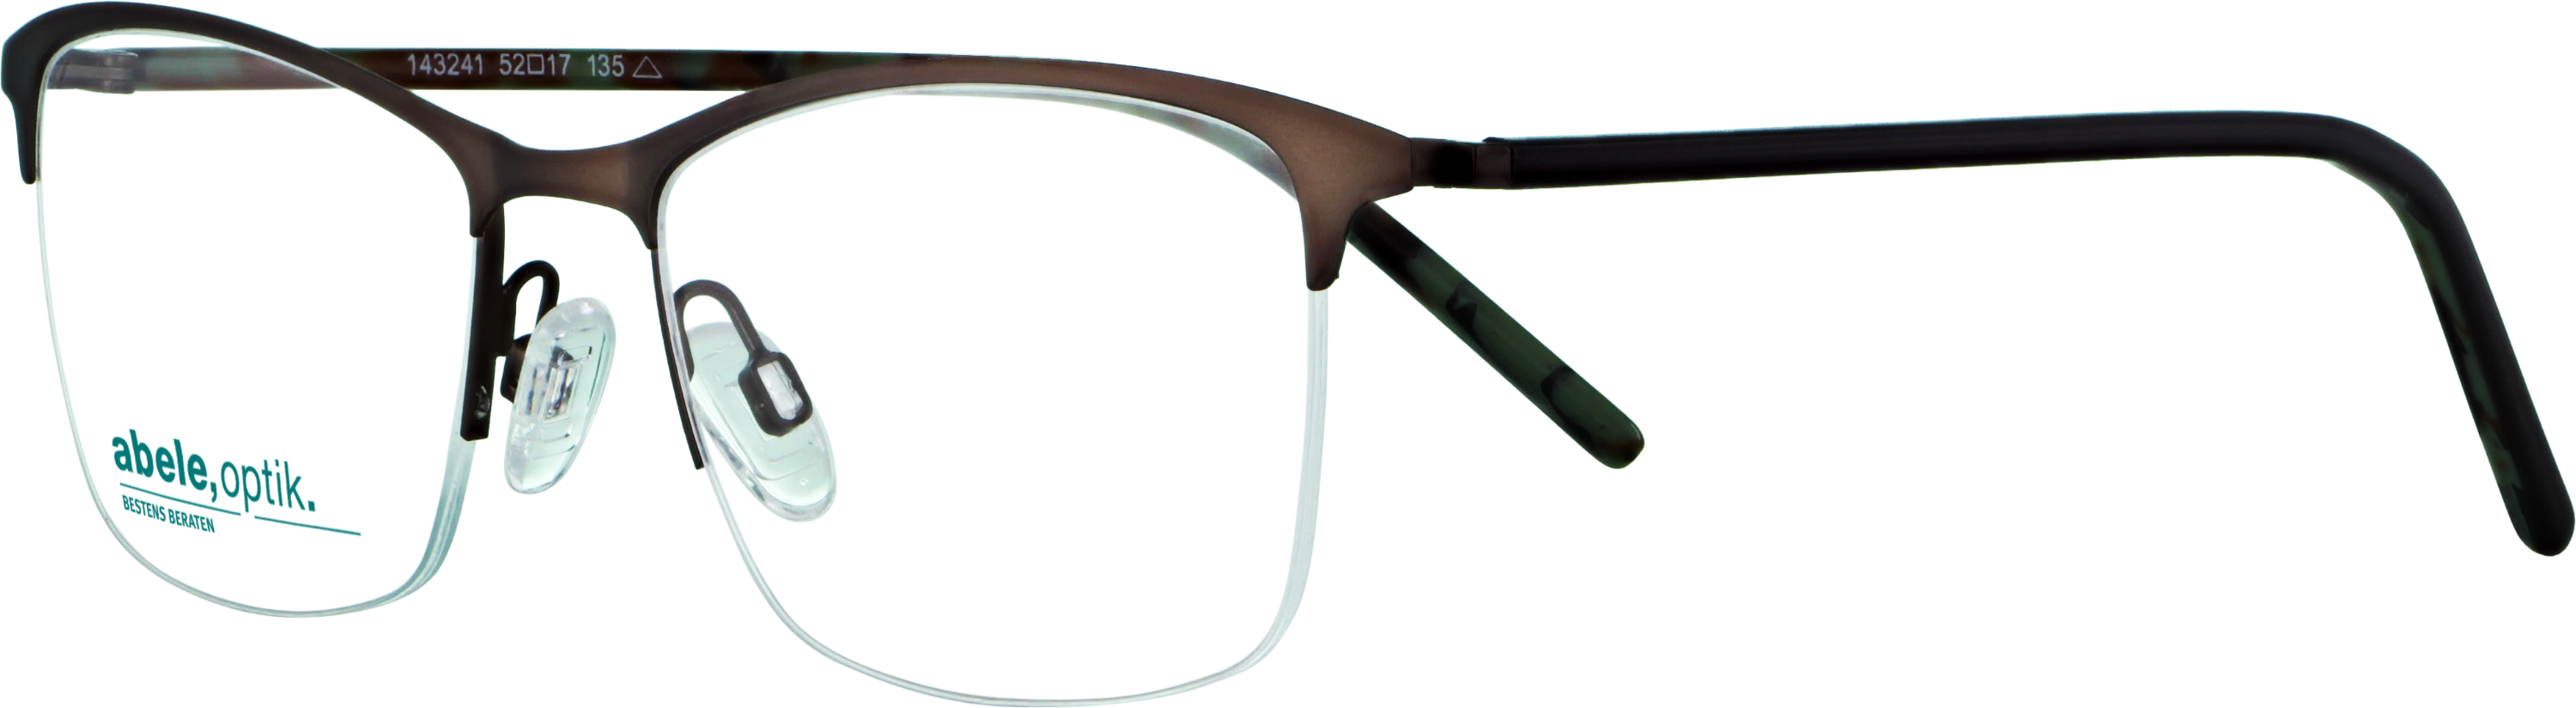 Das Bild zeigt die Korrektionsbrille 143241 von der Marke Abele Optik in dunkelgrau.